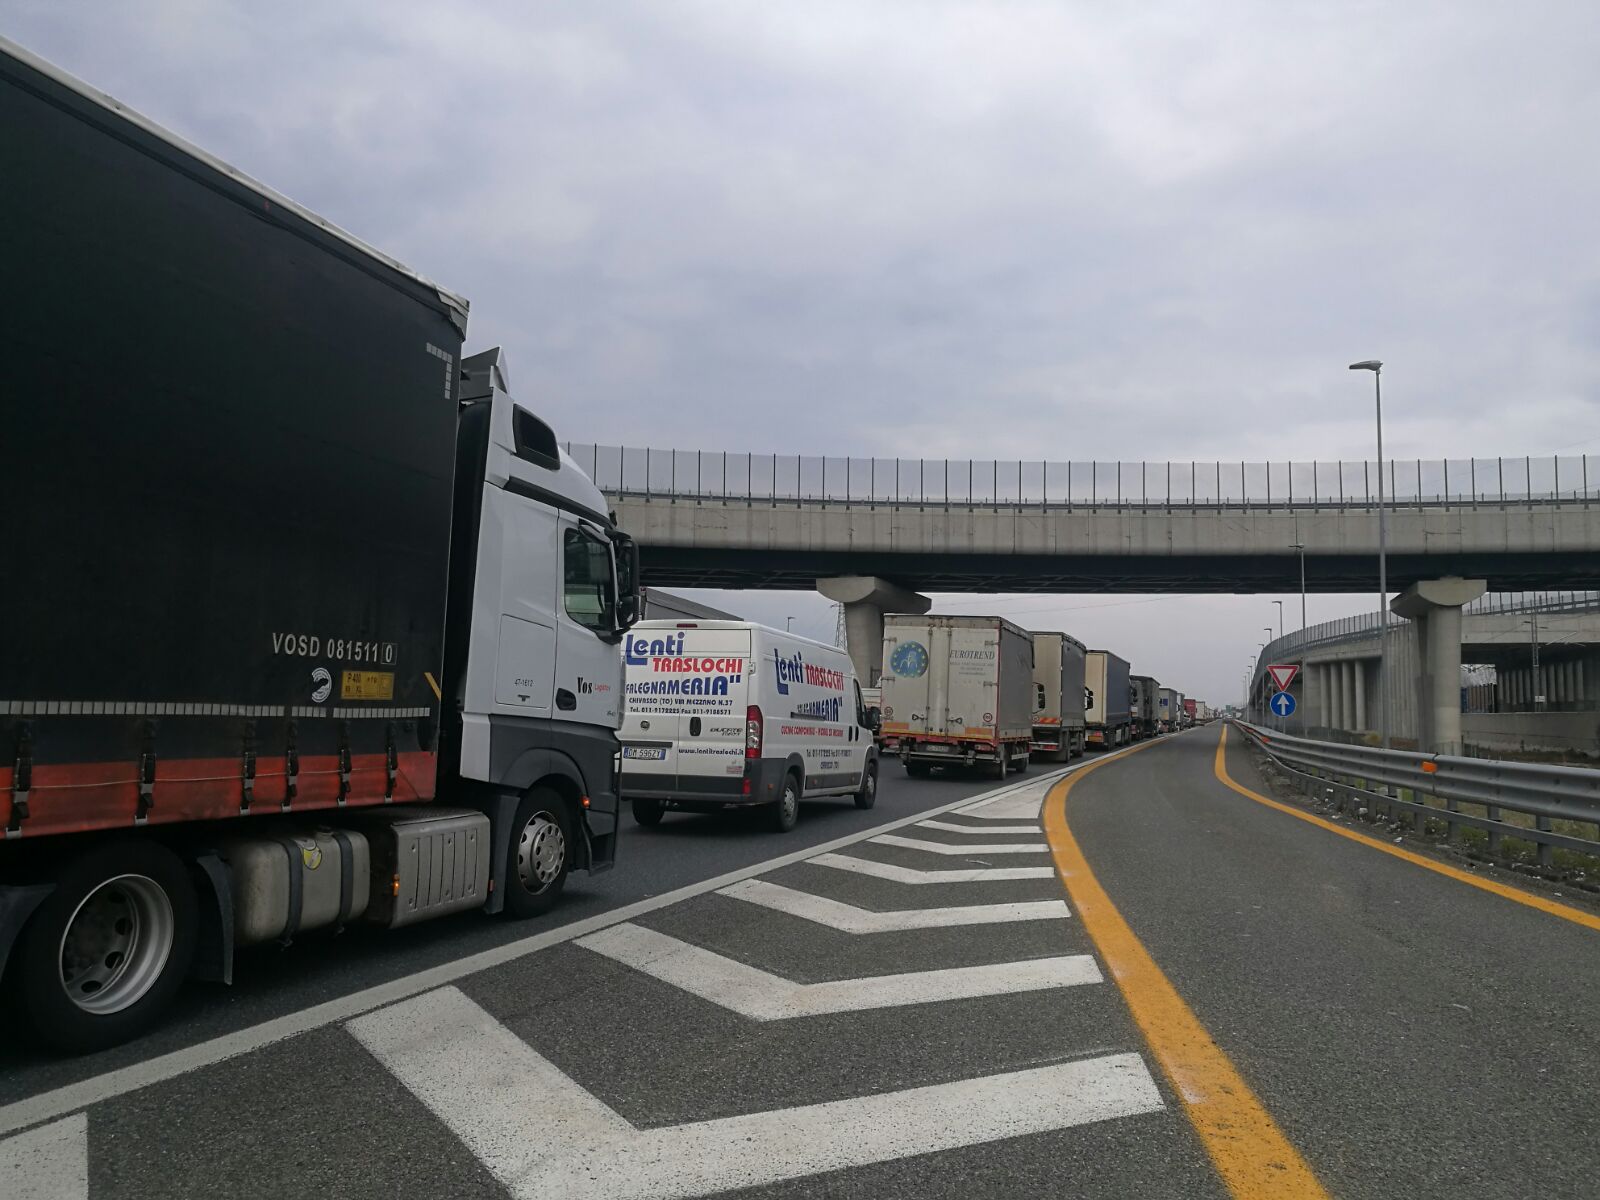 Ancora autostrade da bollino nero per chi si mette in viaggio domani, martedì 14 agosto. A complicare le cose la chiusura del tratto di Bologna.